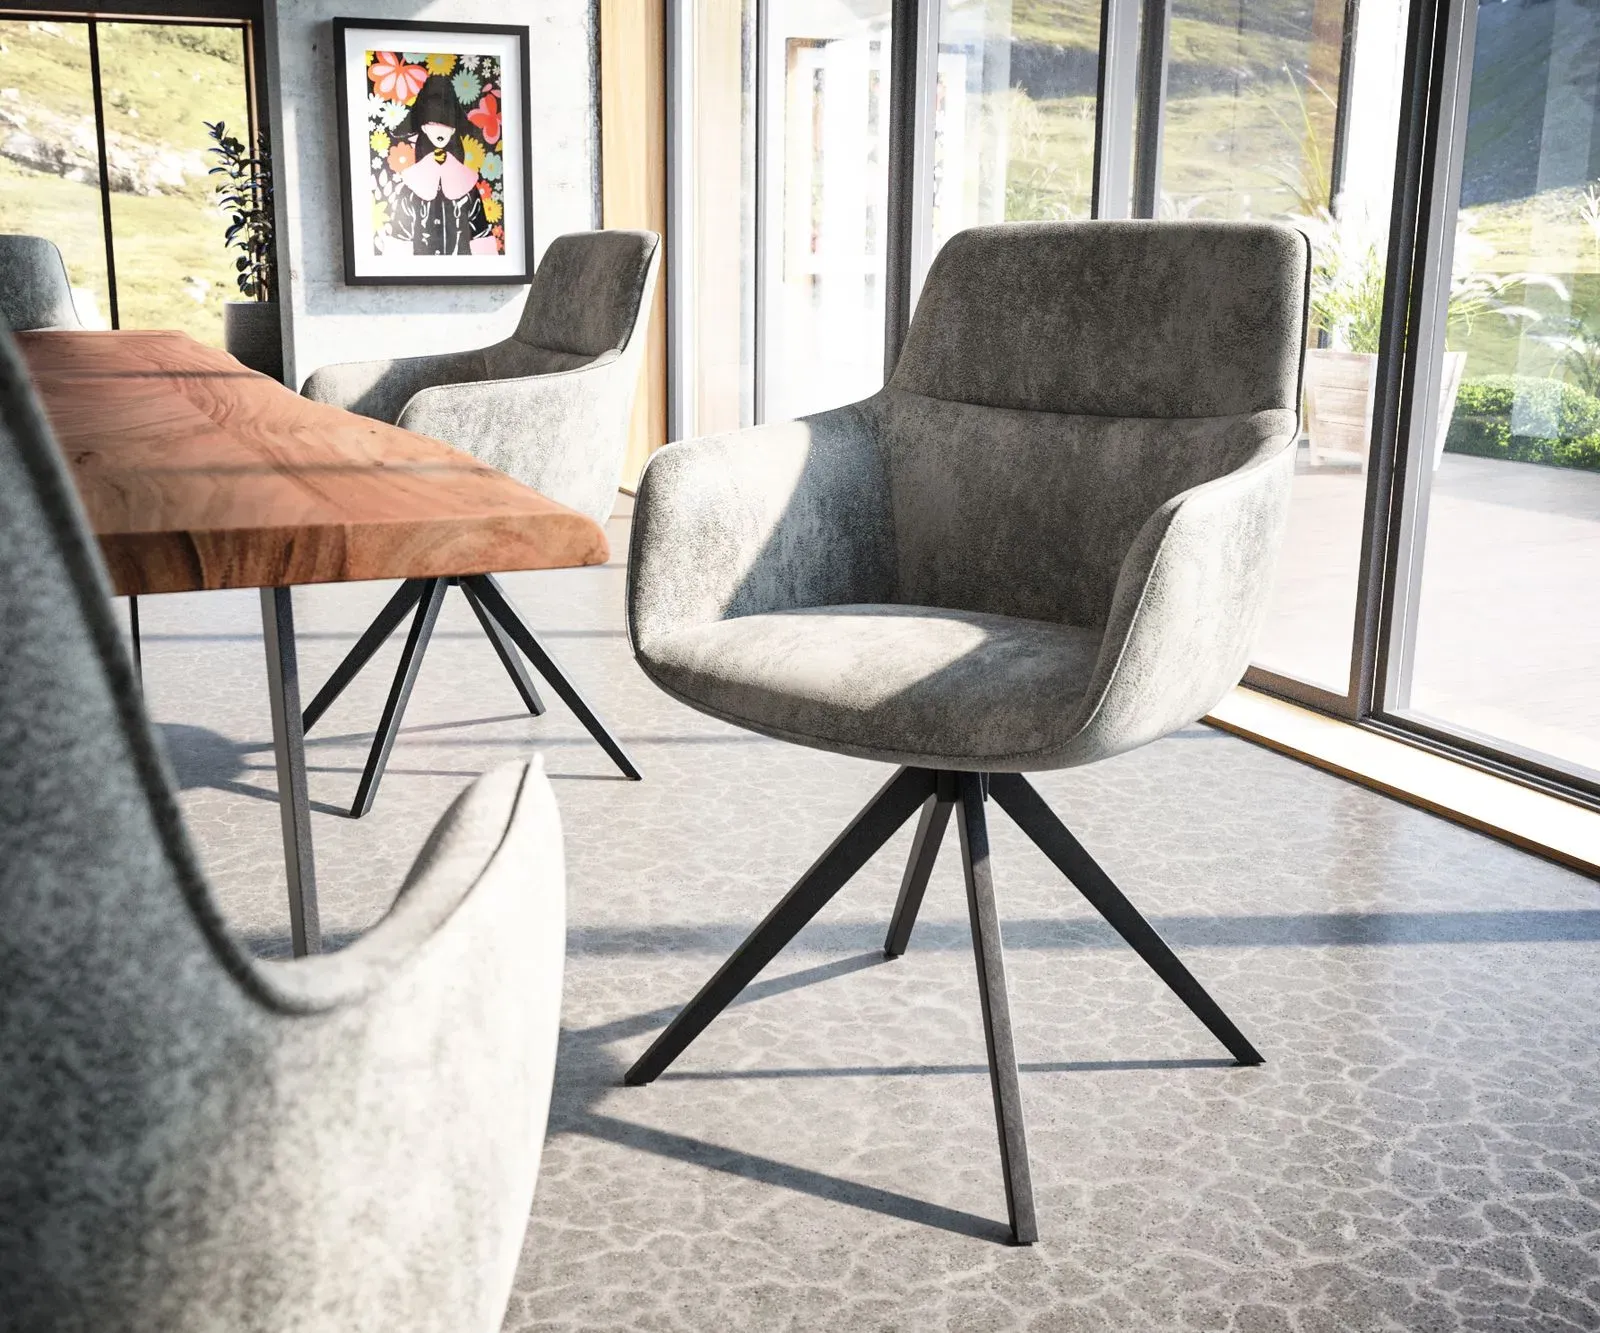 DELIFE Chaise-pivotante Pejo-Flex gris antique cadre croisé angulaire noir pivote sur 180°, Chaises de salle à manger